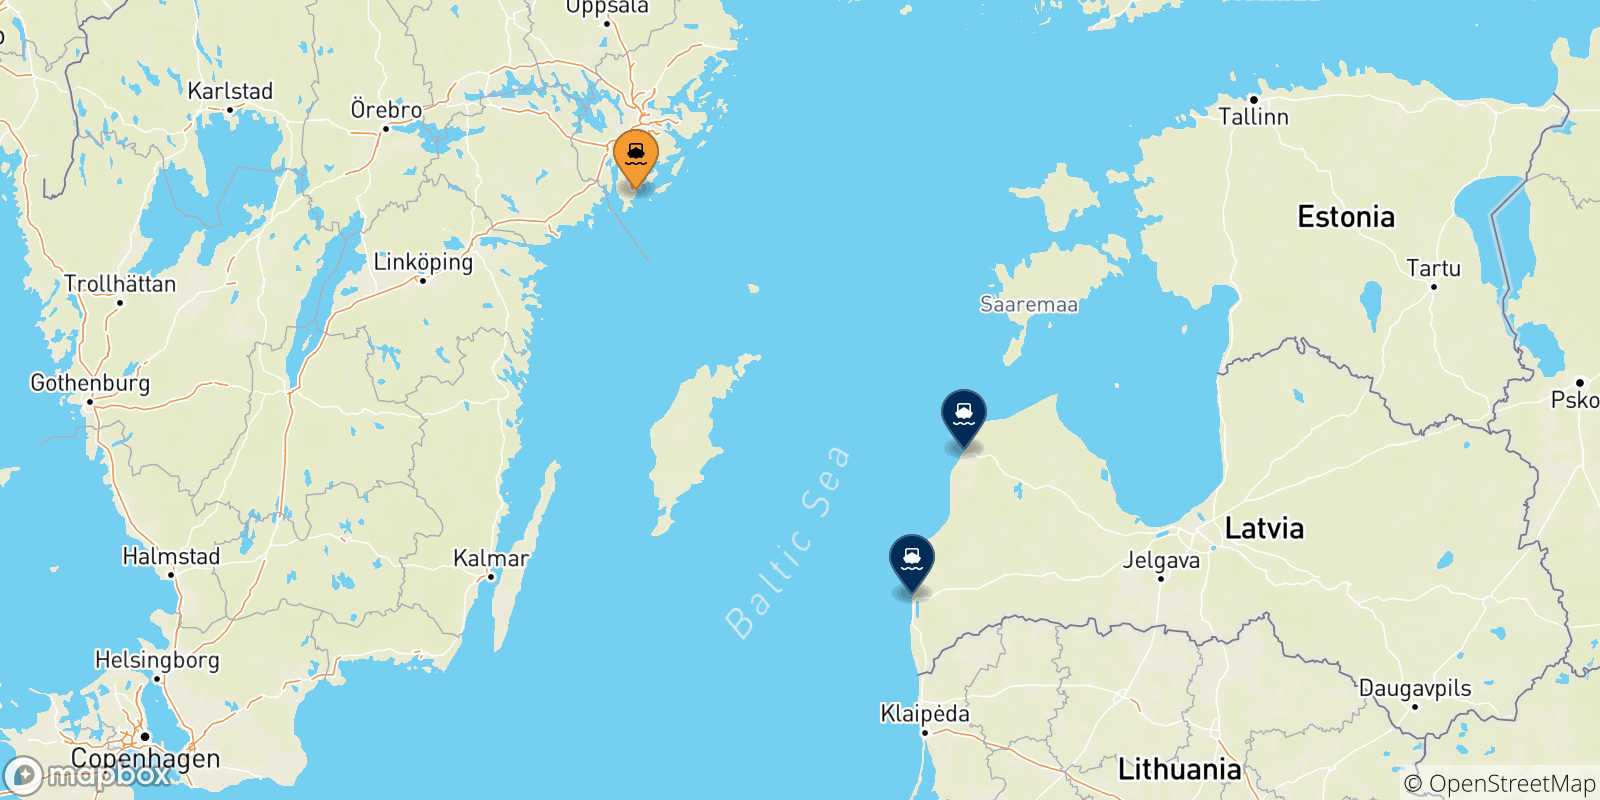 Mappa delle possibili rotte tra la Svezia e la Lettonia